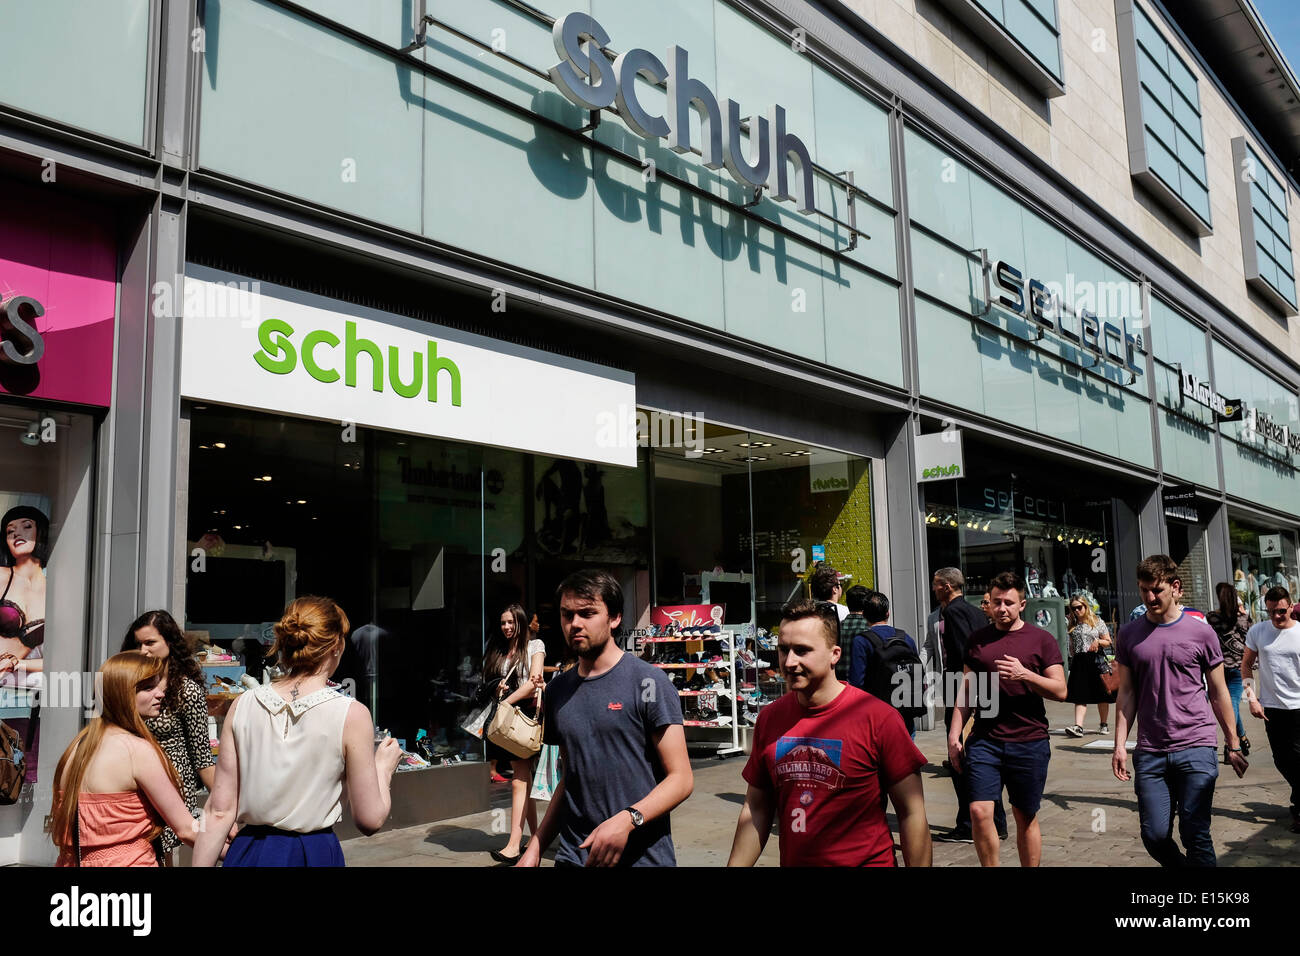 Schuh store front dans le centre-ville de Manchester UK Banque D'Images